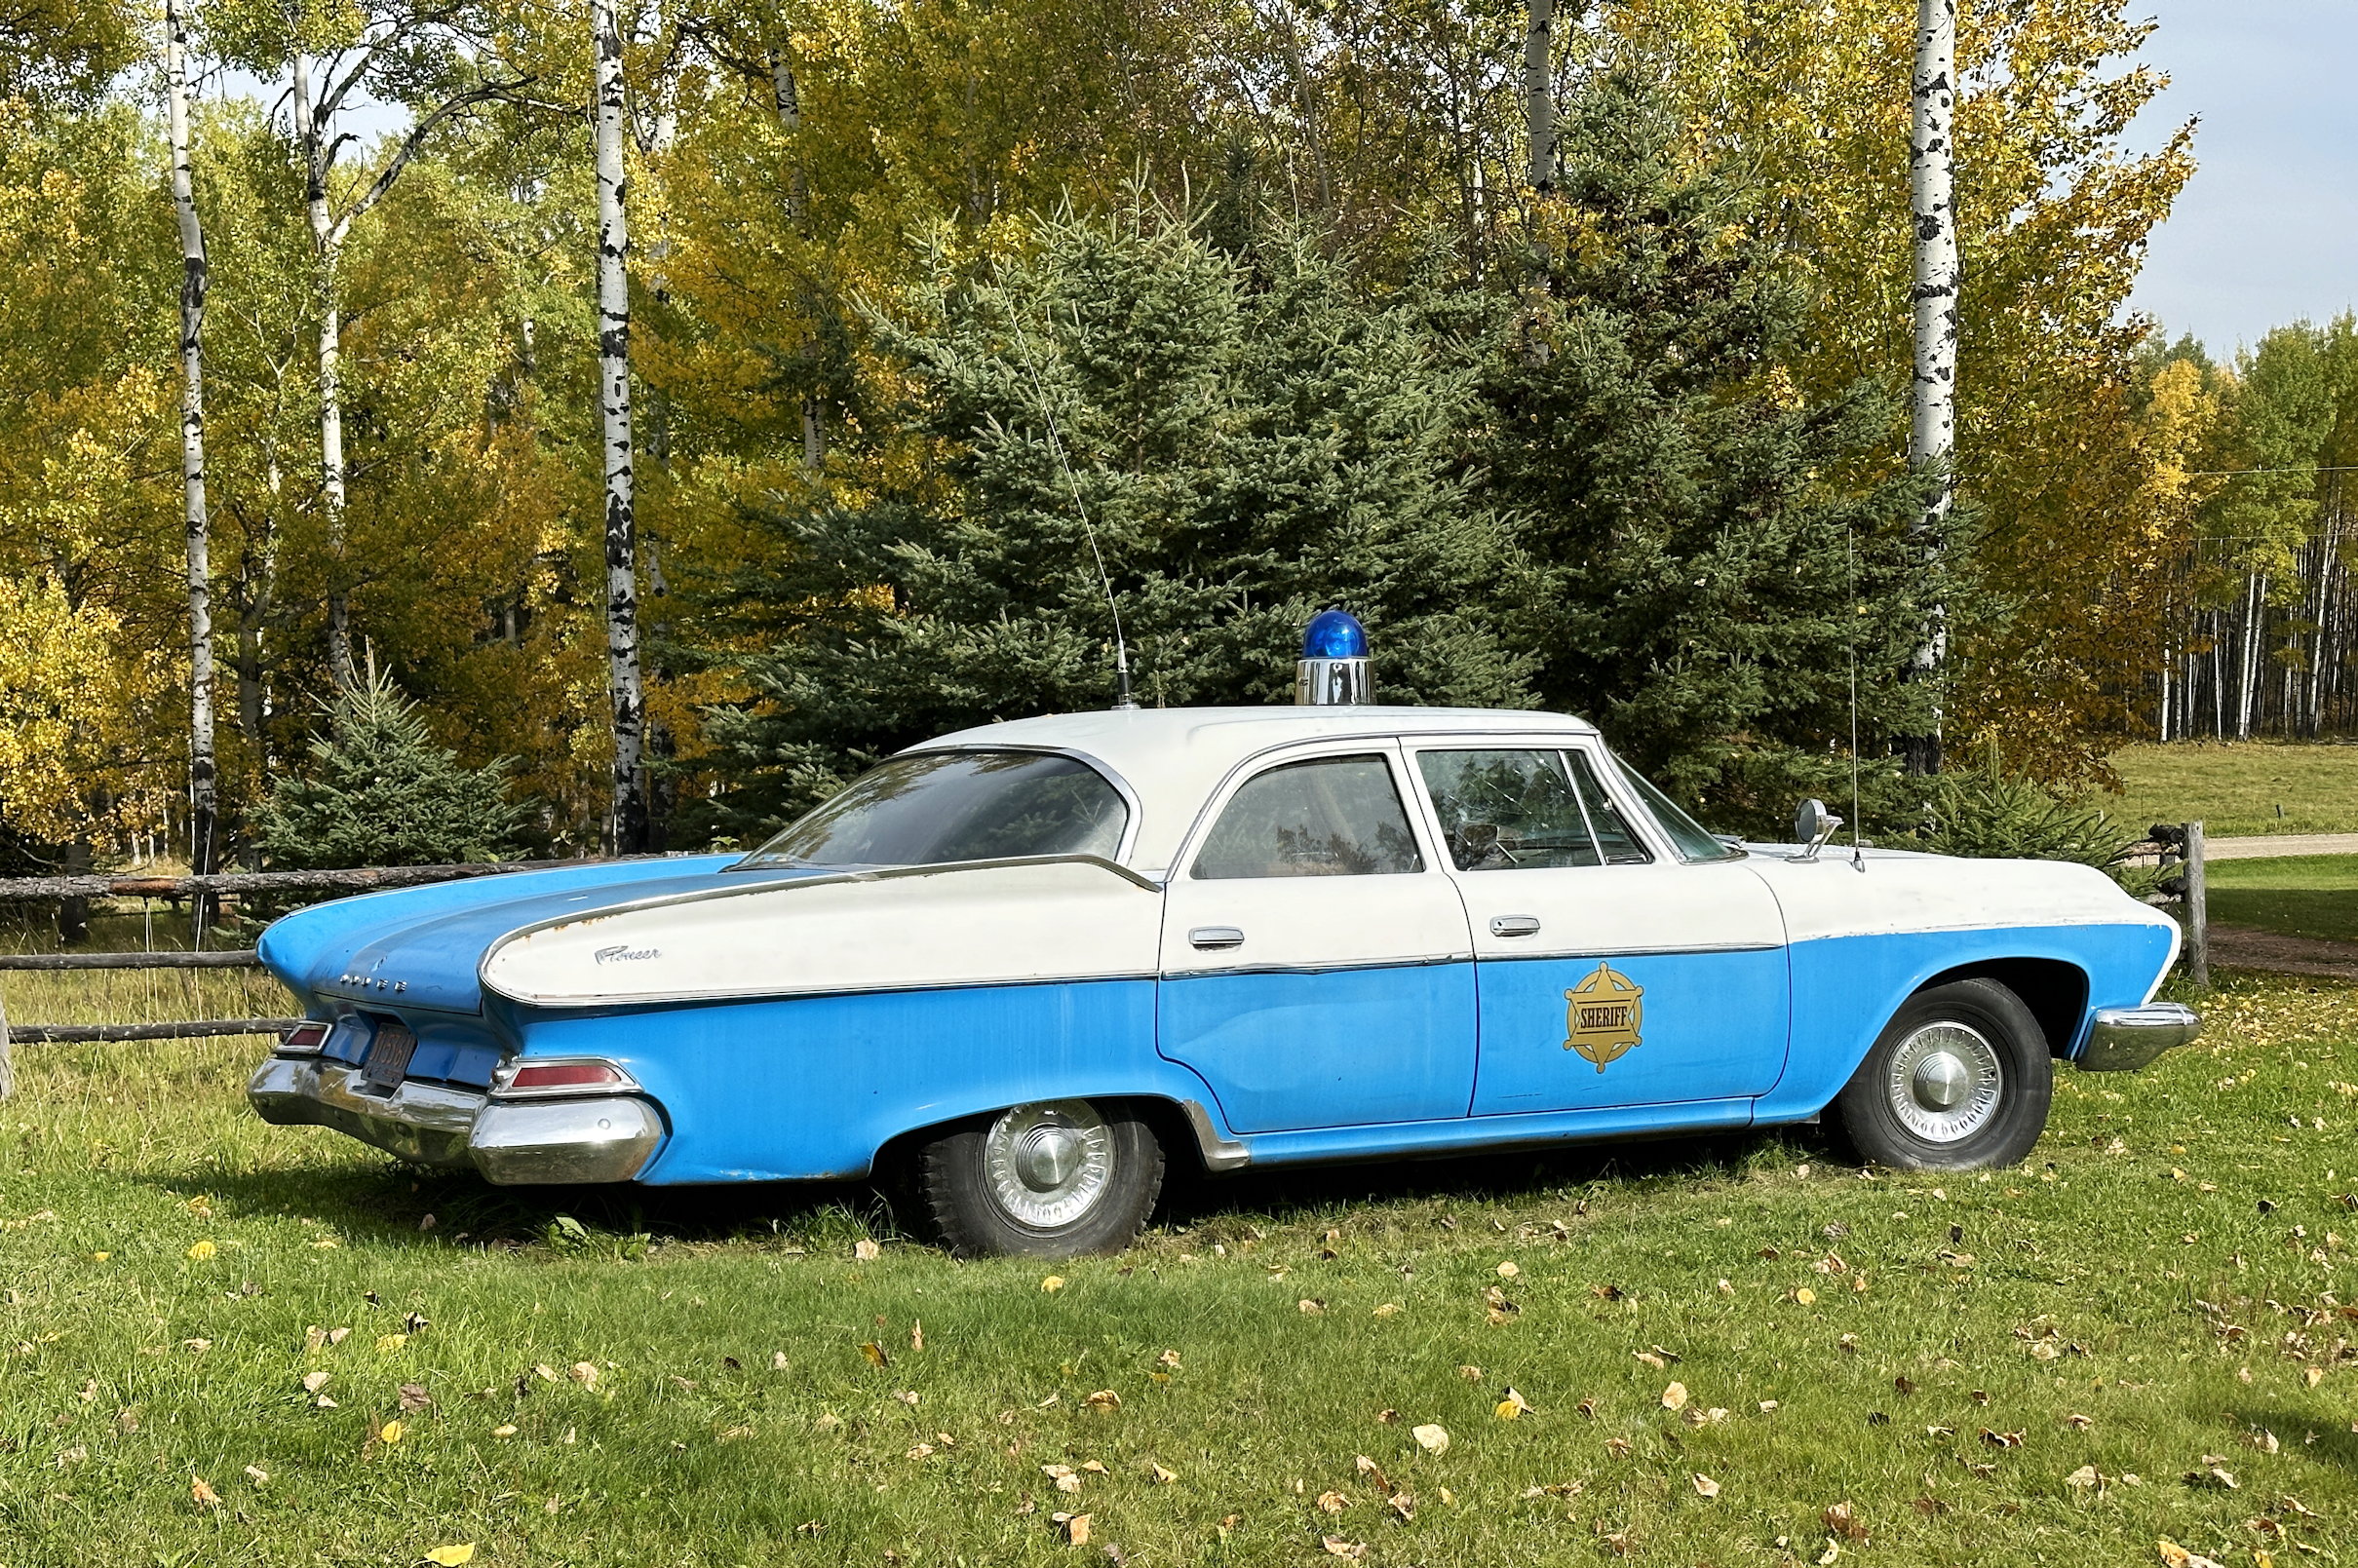 Ein Oldtimer Police Car in hellem Blau mit einem grossen Blaulicht auf dem Dach